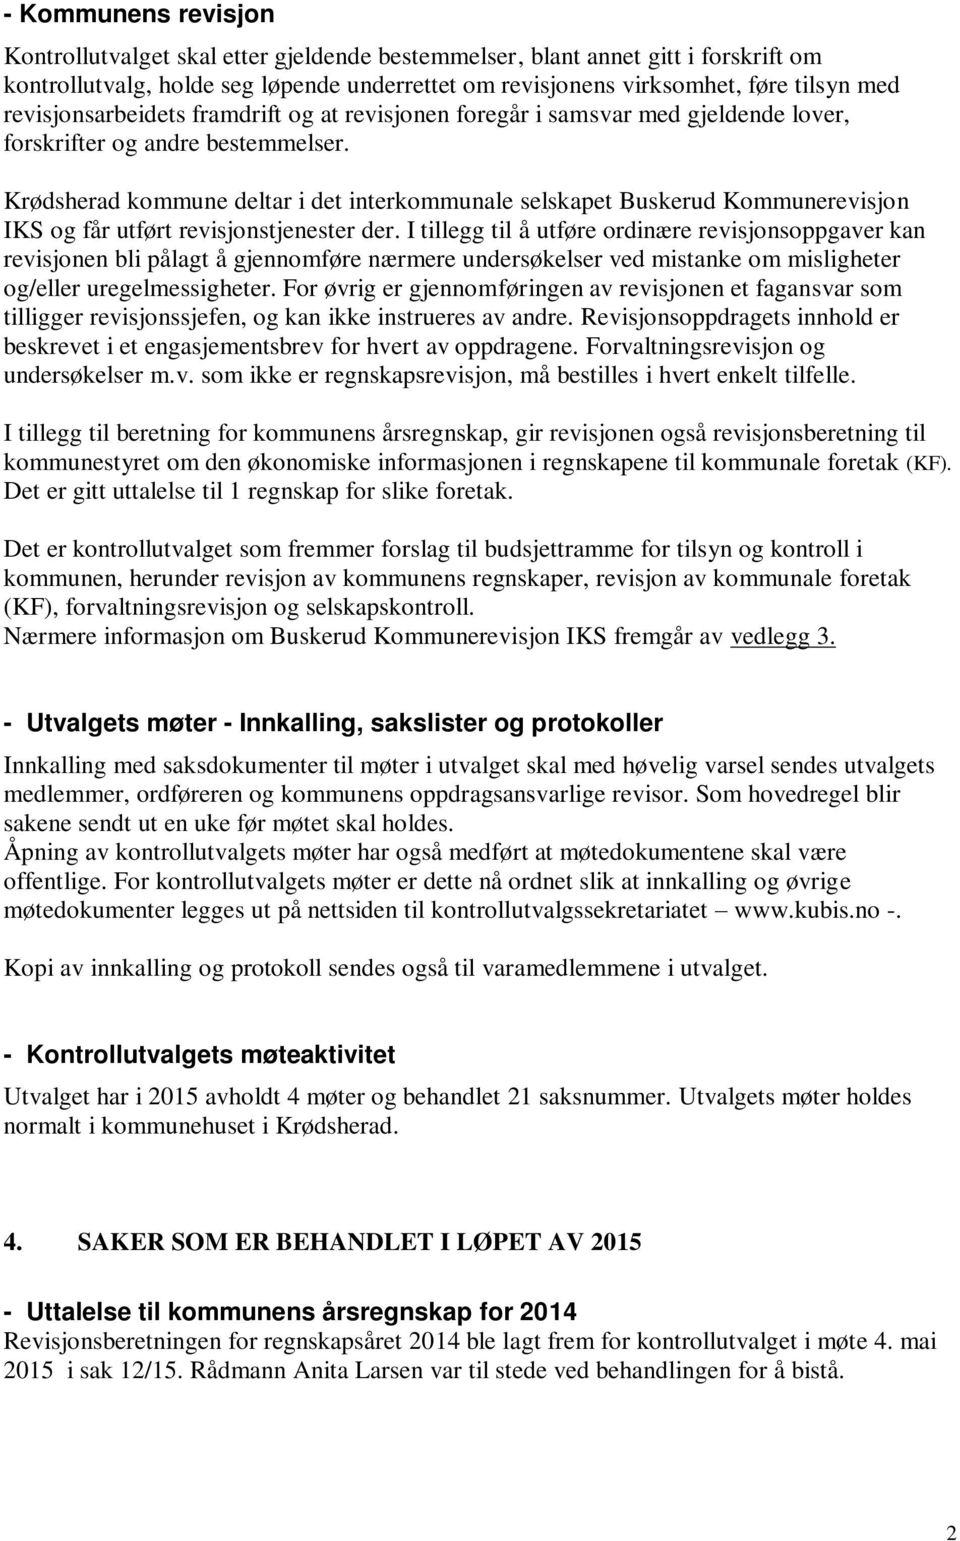 Krødsherad kommune deltar i det interkommunale selskapet Buskerud Kommunerevisjon IKS og får utført revisjonstjenester der.